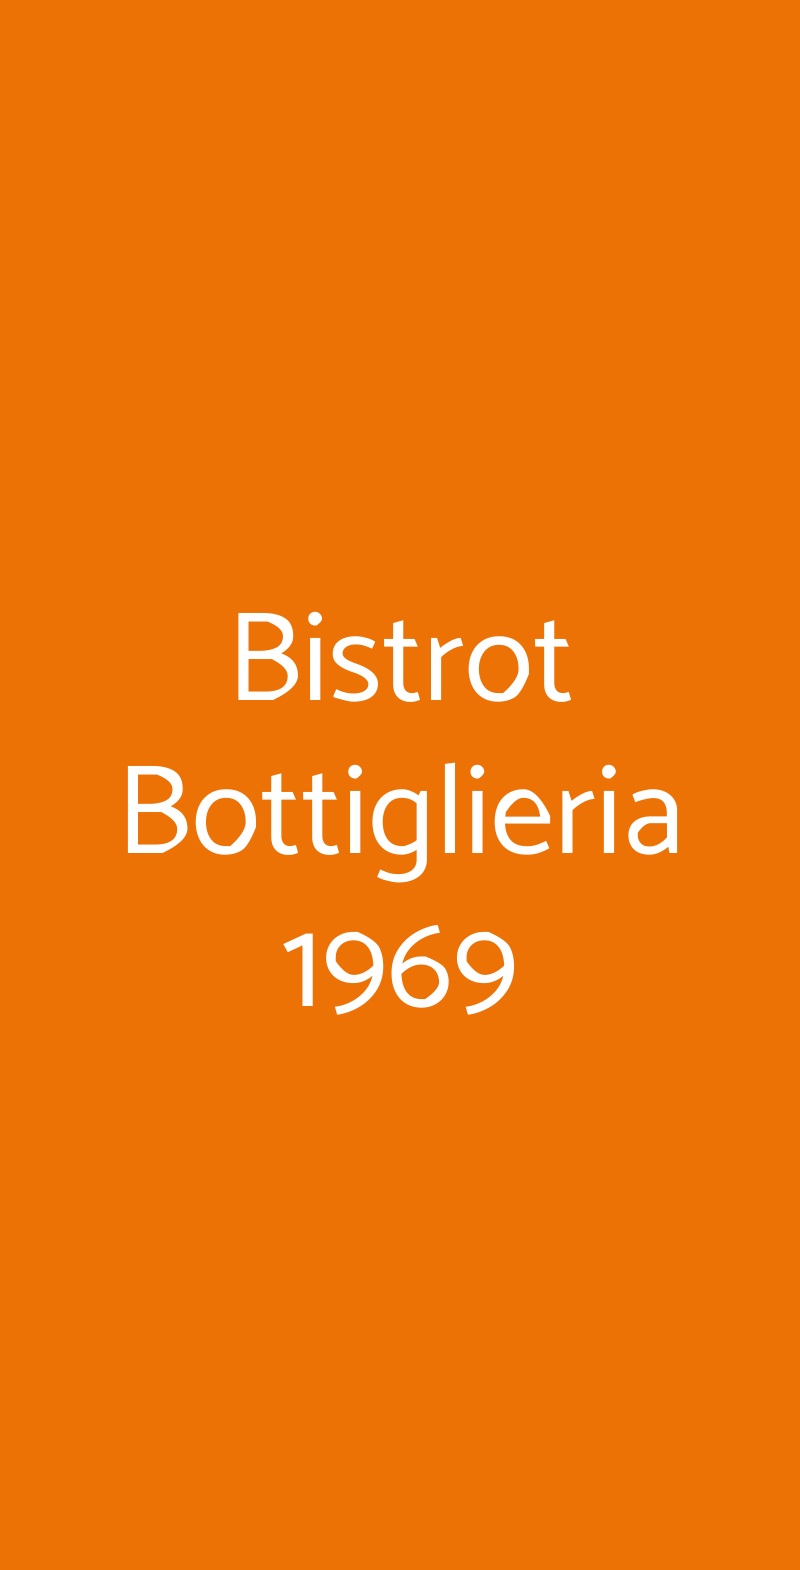 Bistrot Bottiglieria 1969 Milano menù 1 pagina